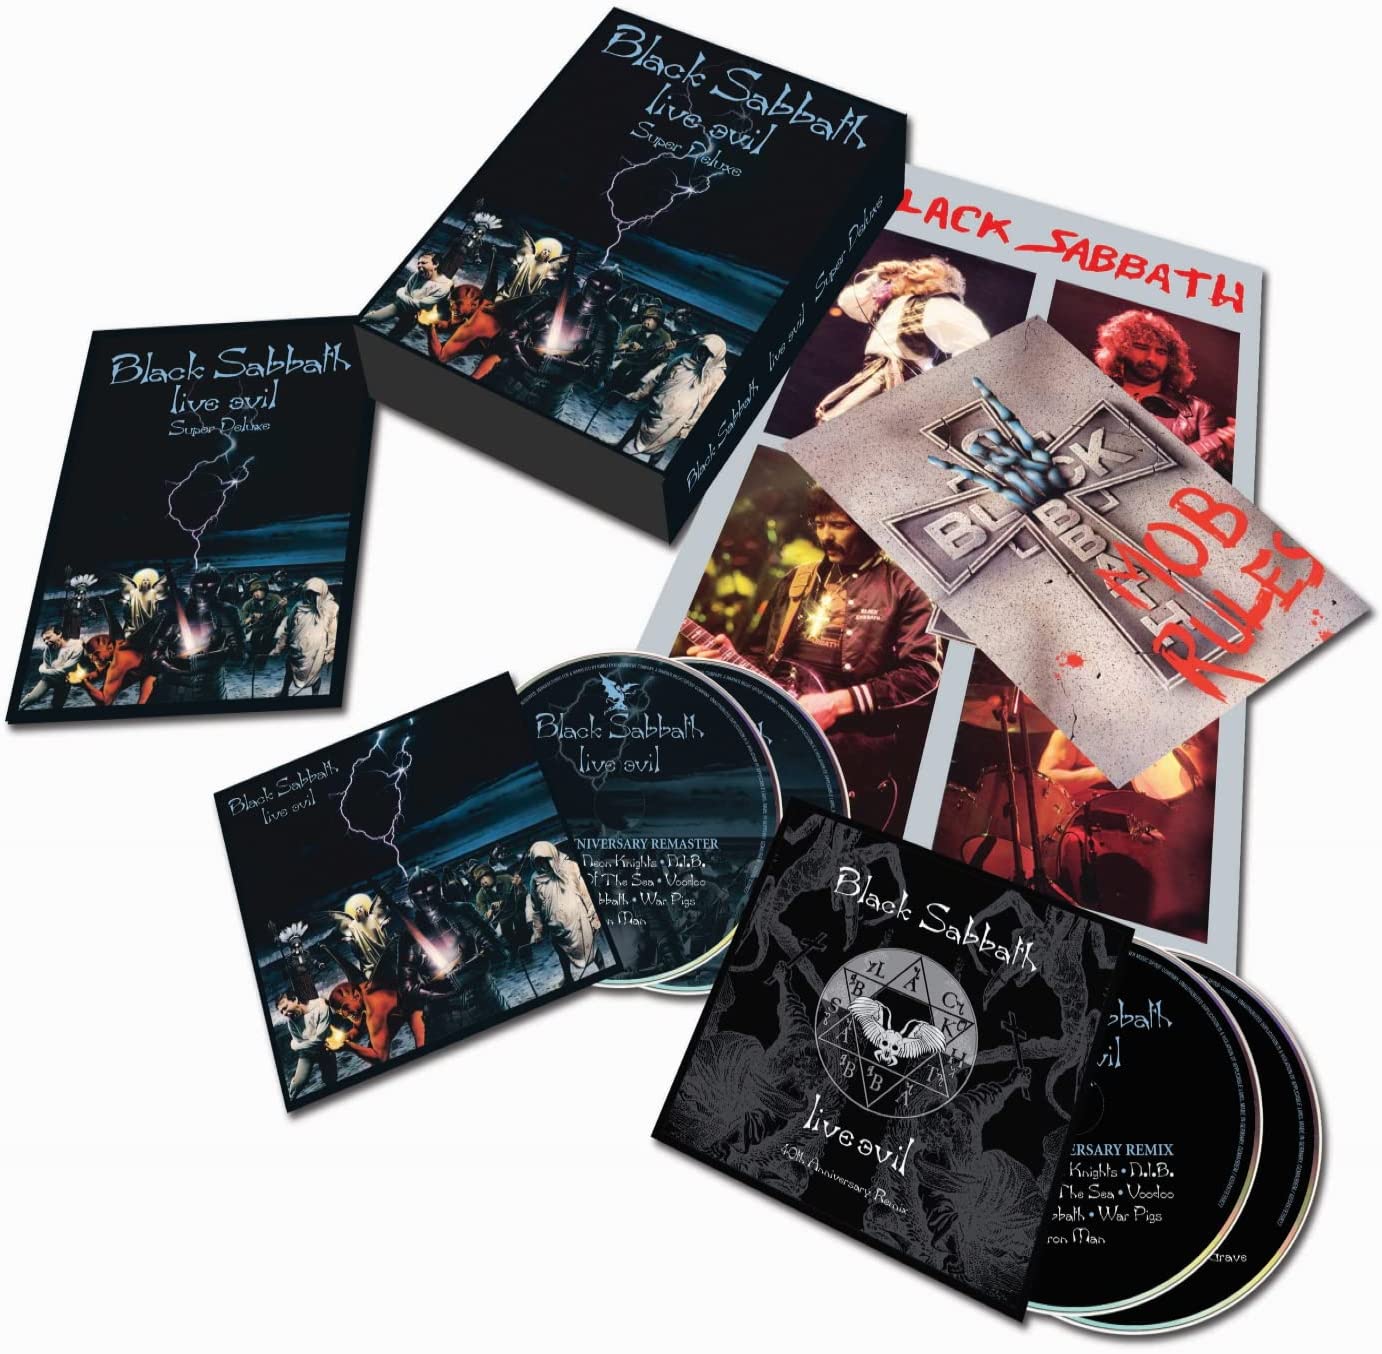 BLACK SABBATH - Live Evil - Super Deluxe 40Th Anniversary Edition